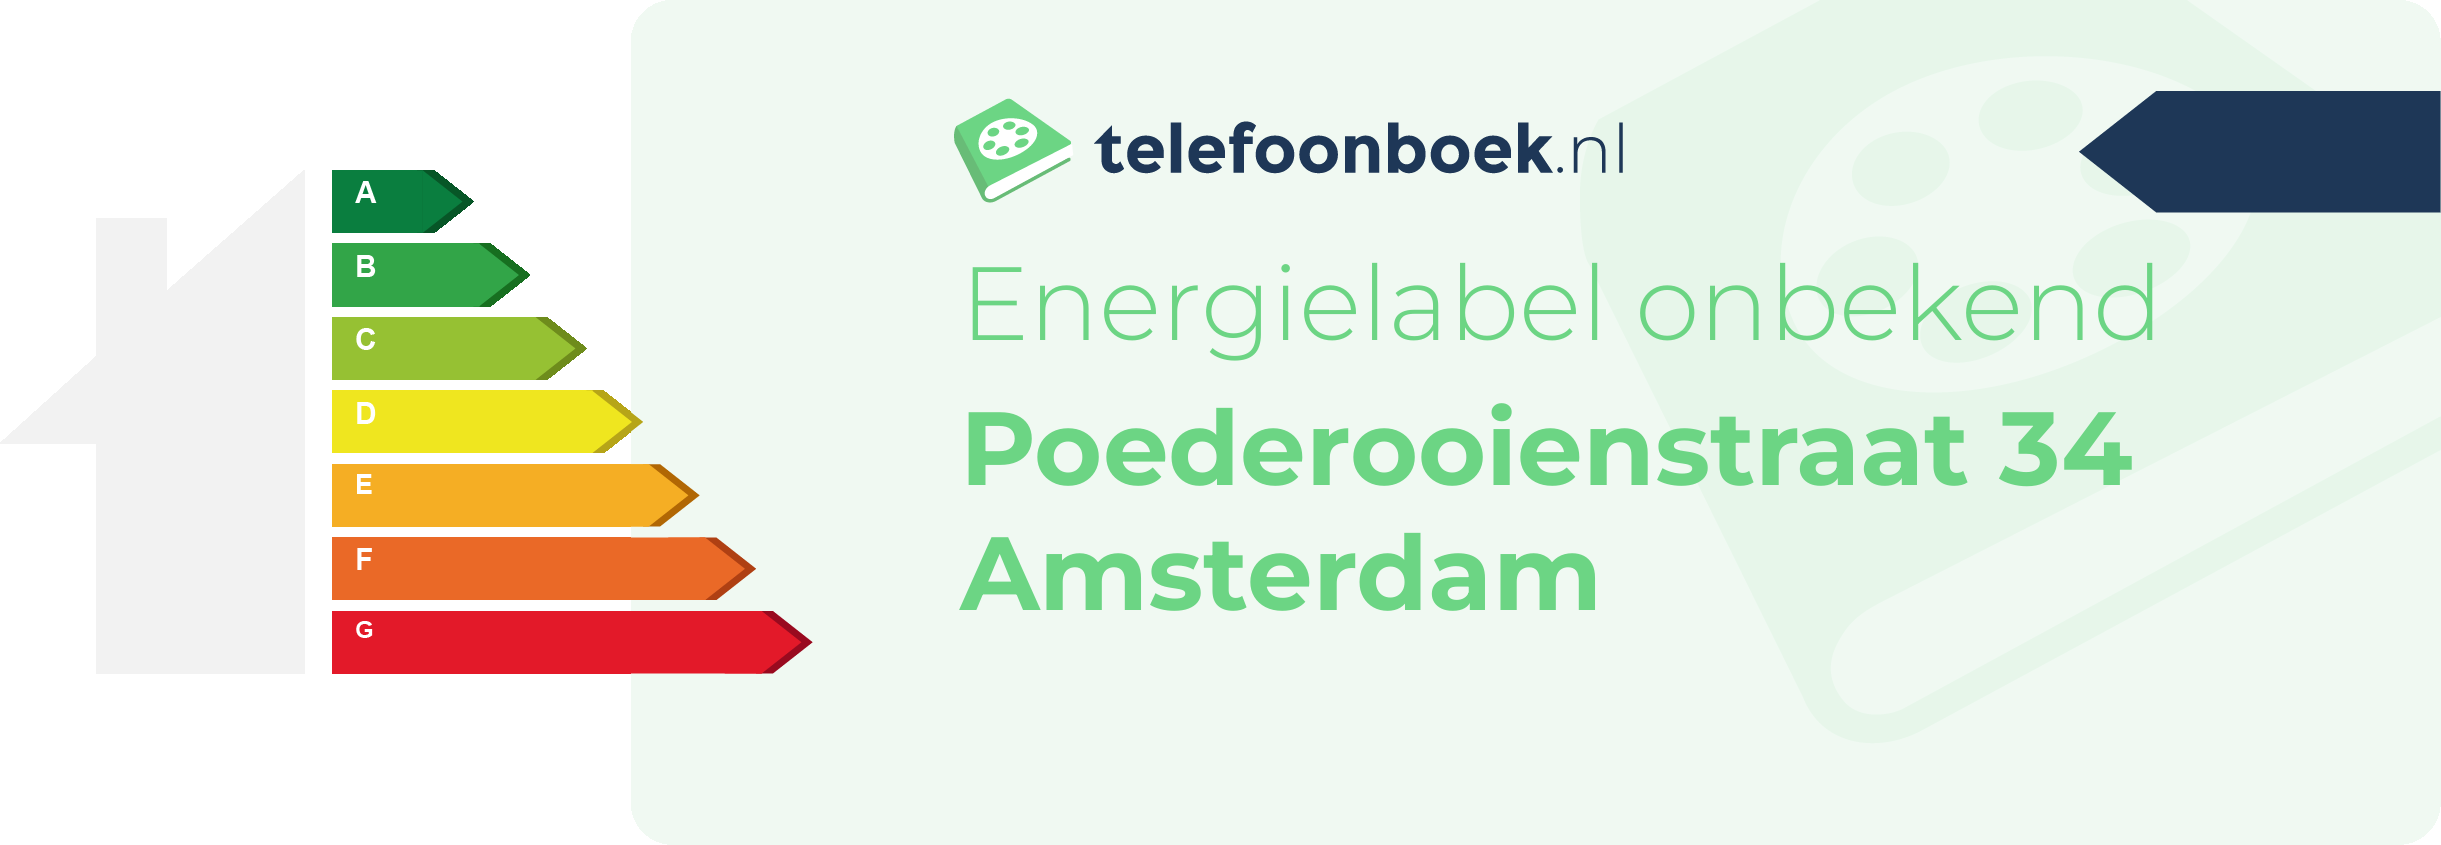 Energielabel Poederooienstraat 34 Amsterdam